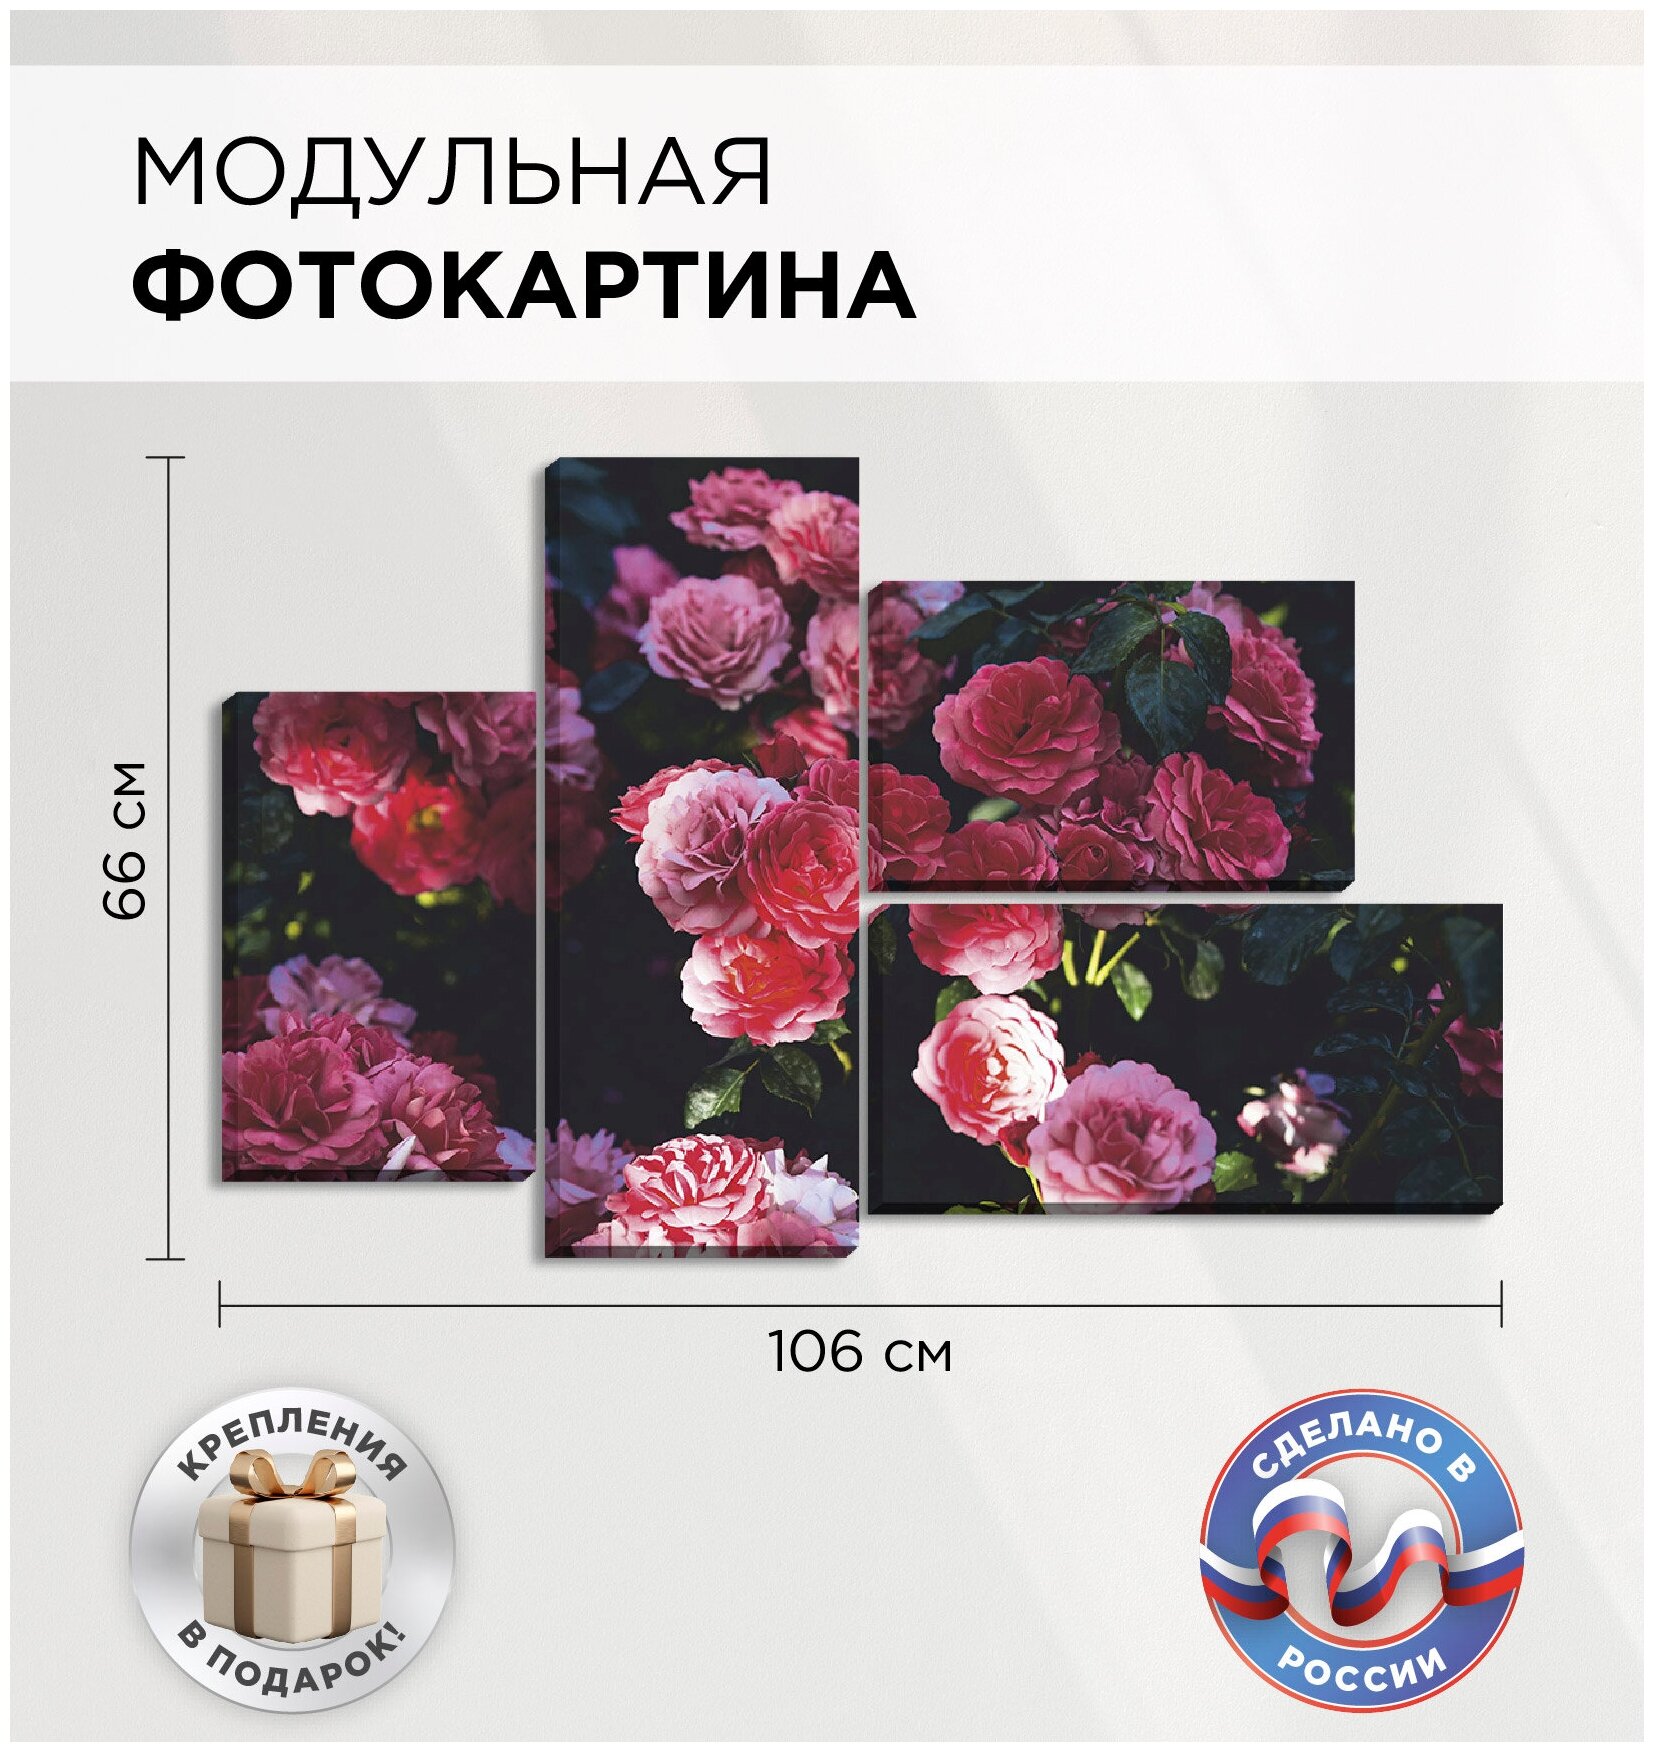 Модульная фотокартина "Розы" для интерьера на стену 106х66см, Картина на холсте из 4 частей, Фотопанно